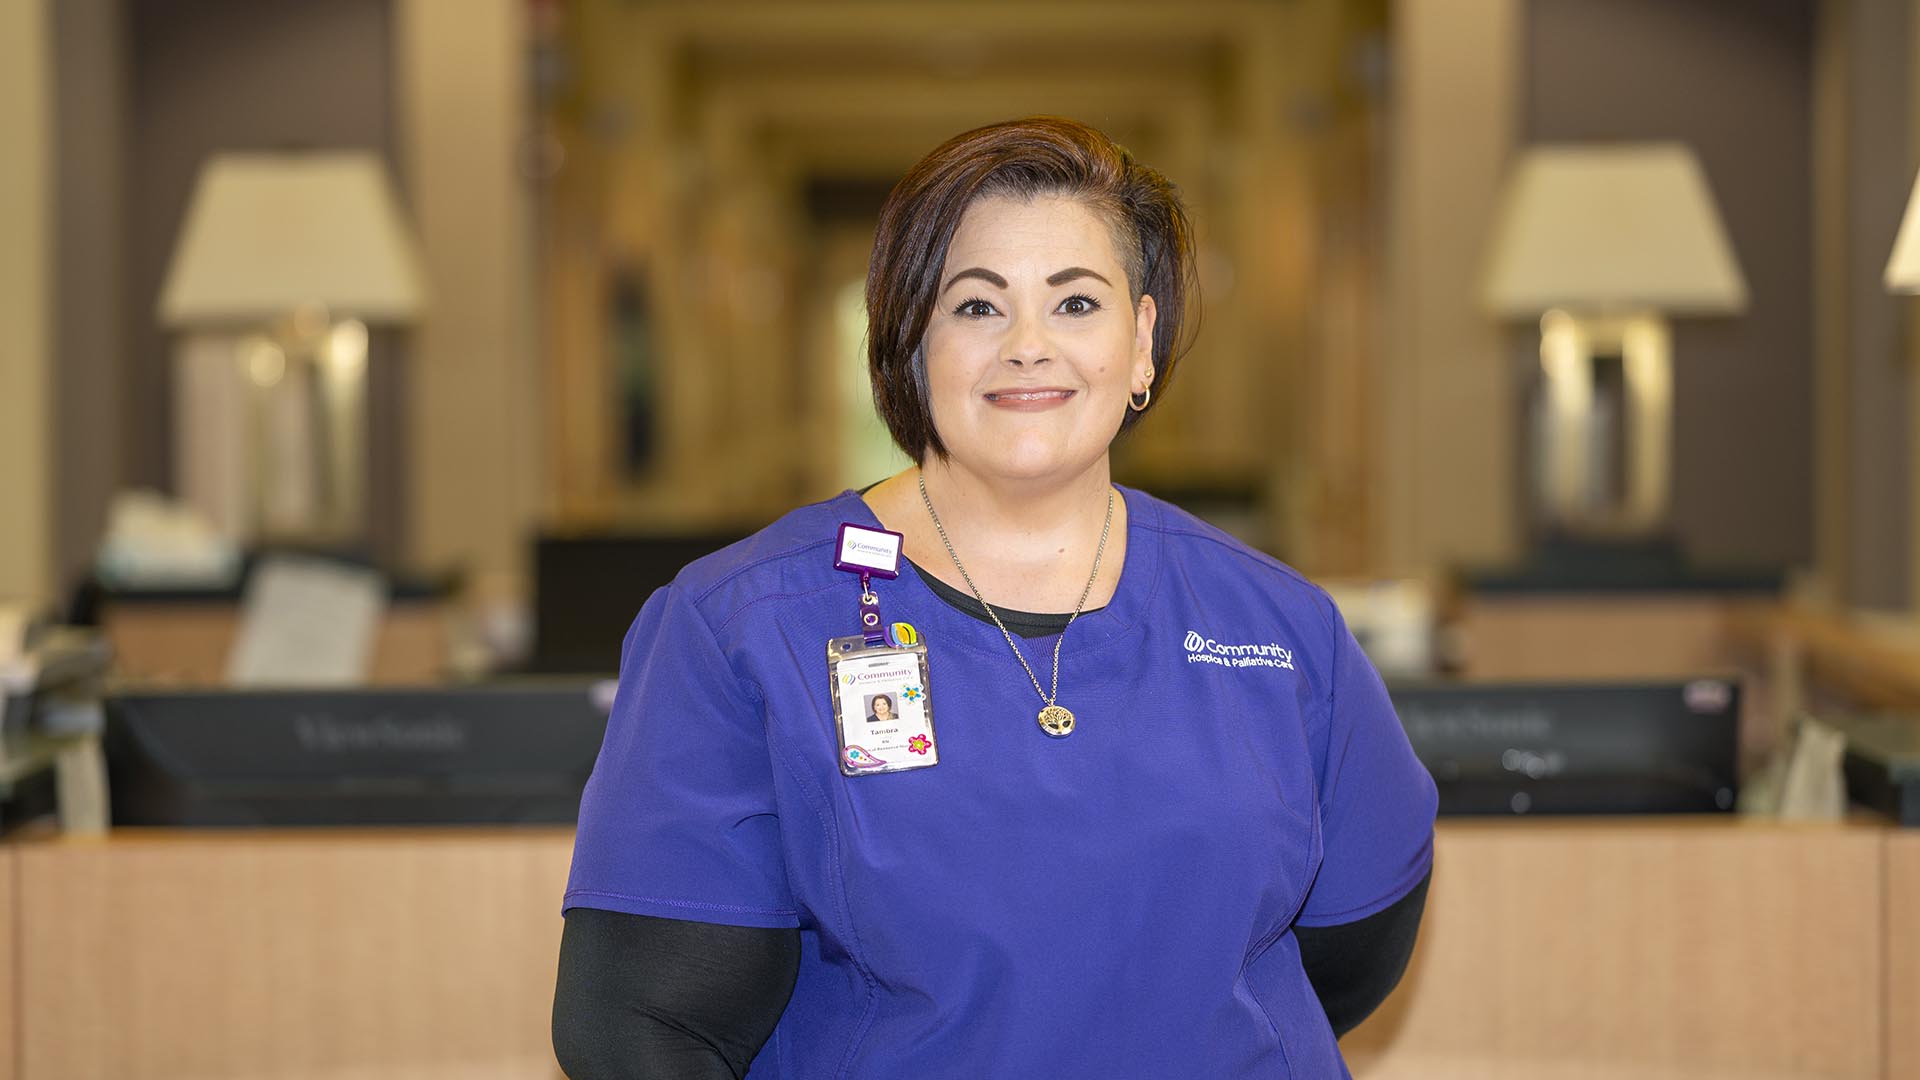 Tambra Shurley, Certified Hospice & Palliative Care Nurse